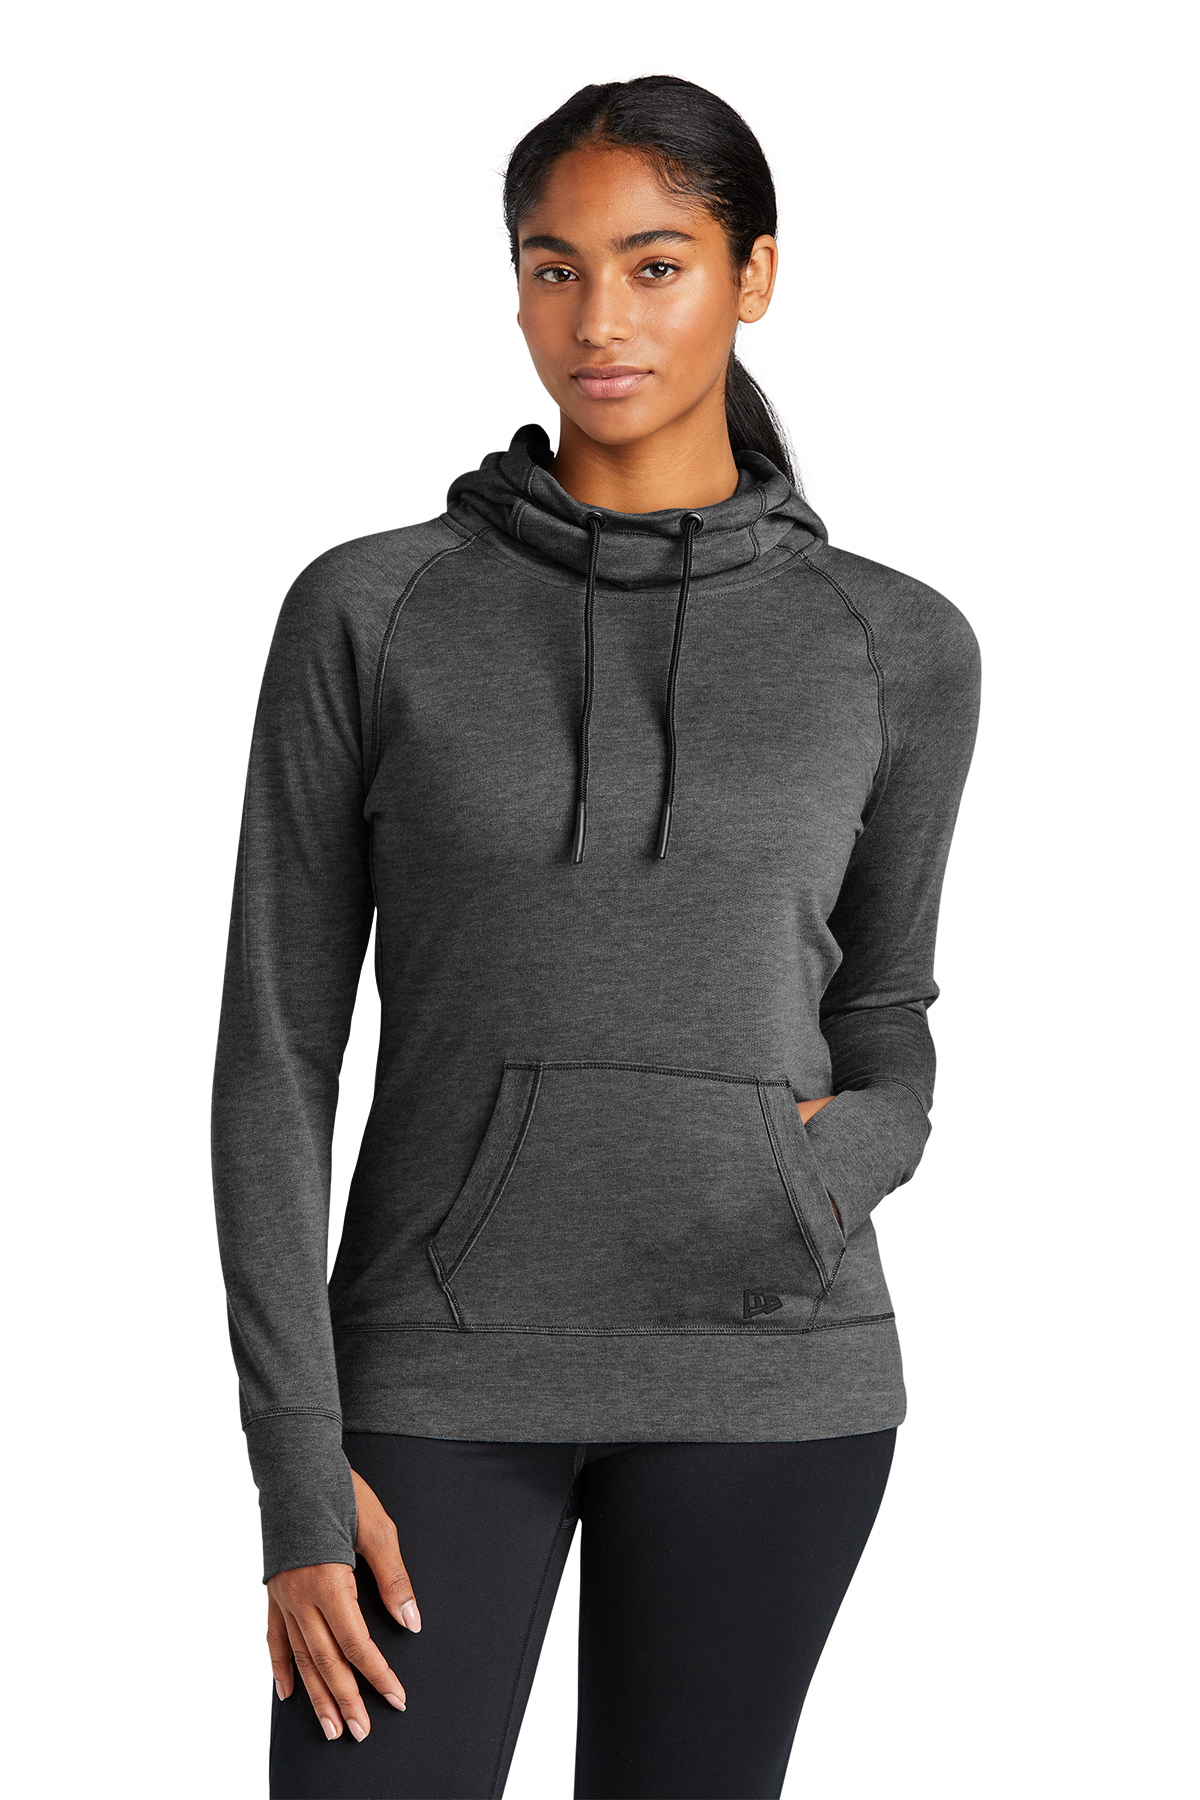 New Era ® Ladies Tri-Blend Fleece Pullover Hoodie | Product | SanMar